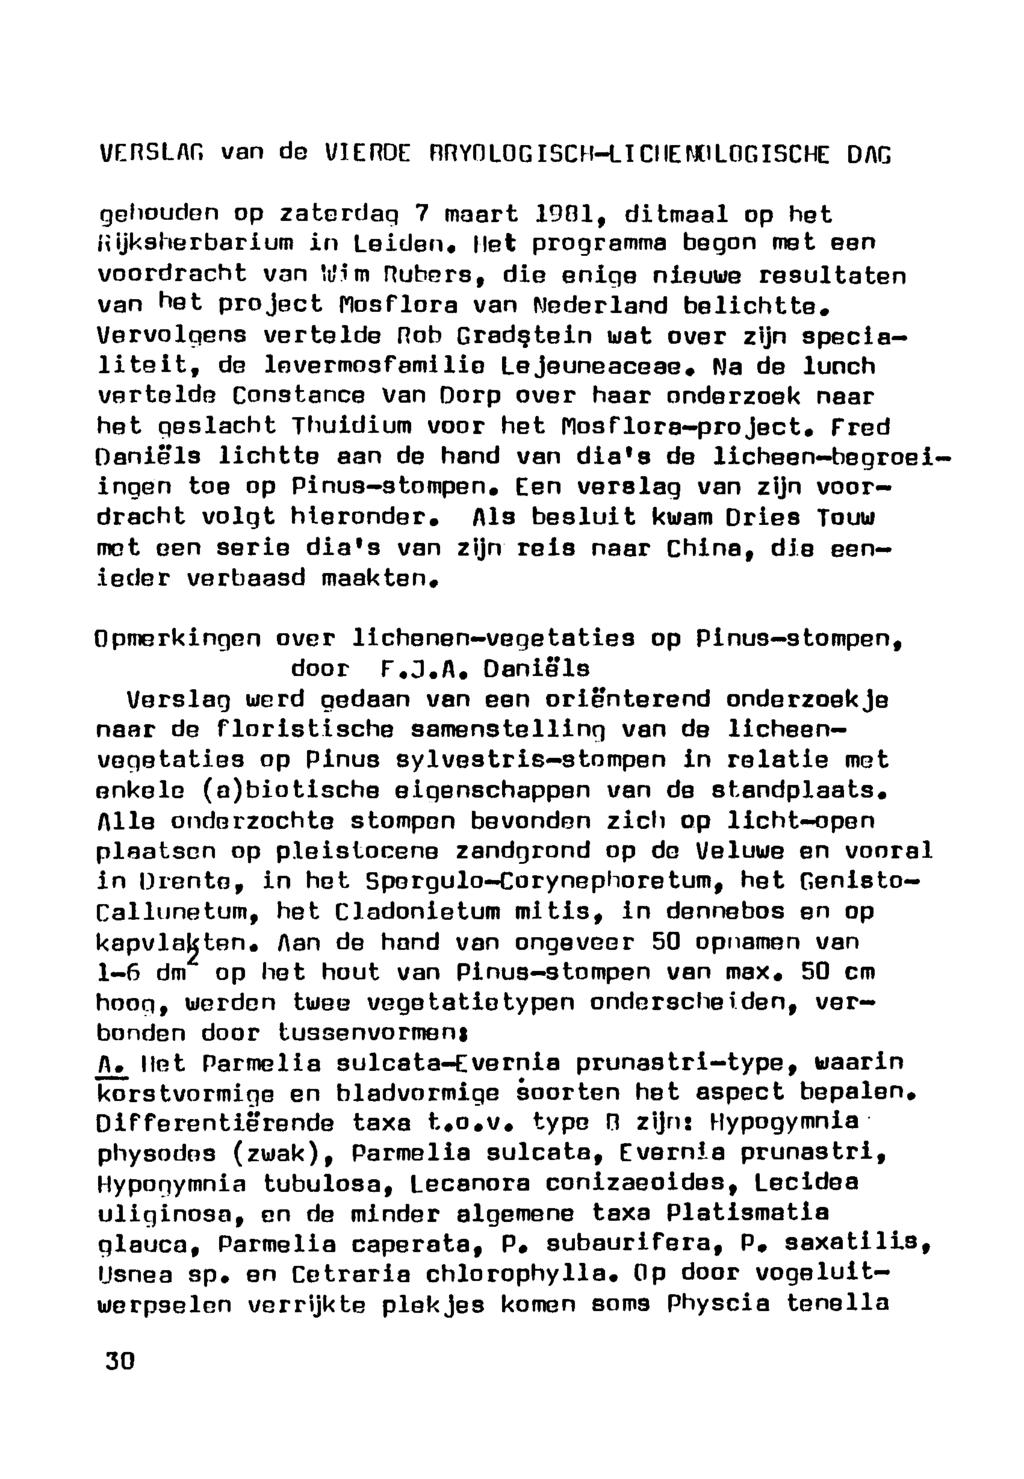 Verslag van de vierde Bryologisch-Lichenologische dag gehouden op zaterdag 7 maart 1901, ditmaal op het üijksherbarium in Leiden, liet programma begon met een voordracht van Vim Pubers, die enige